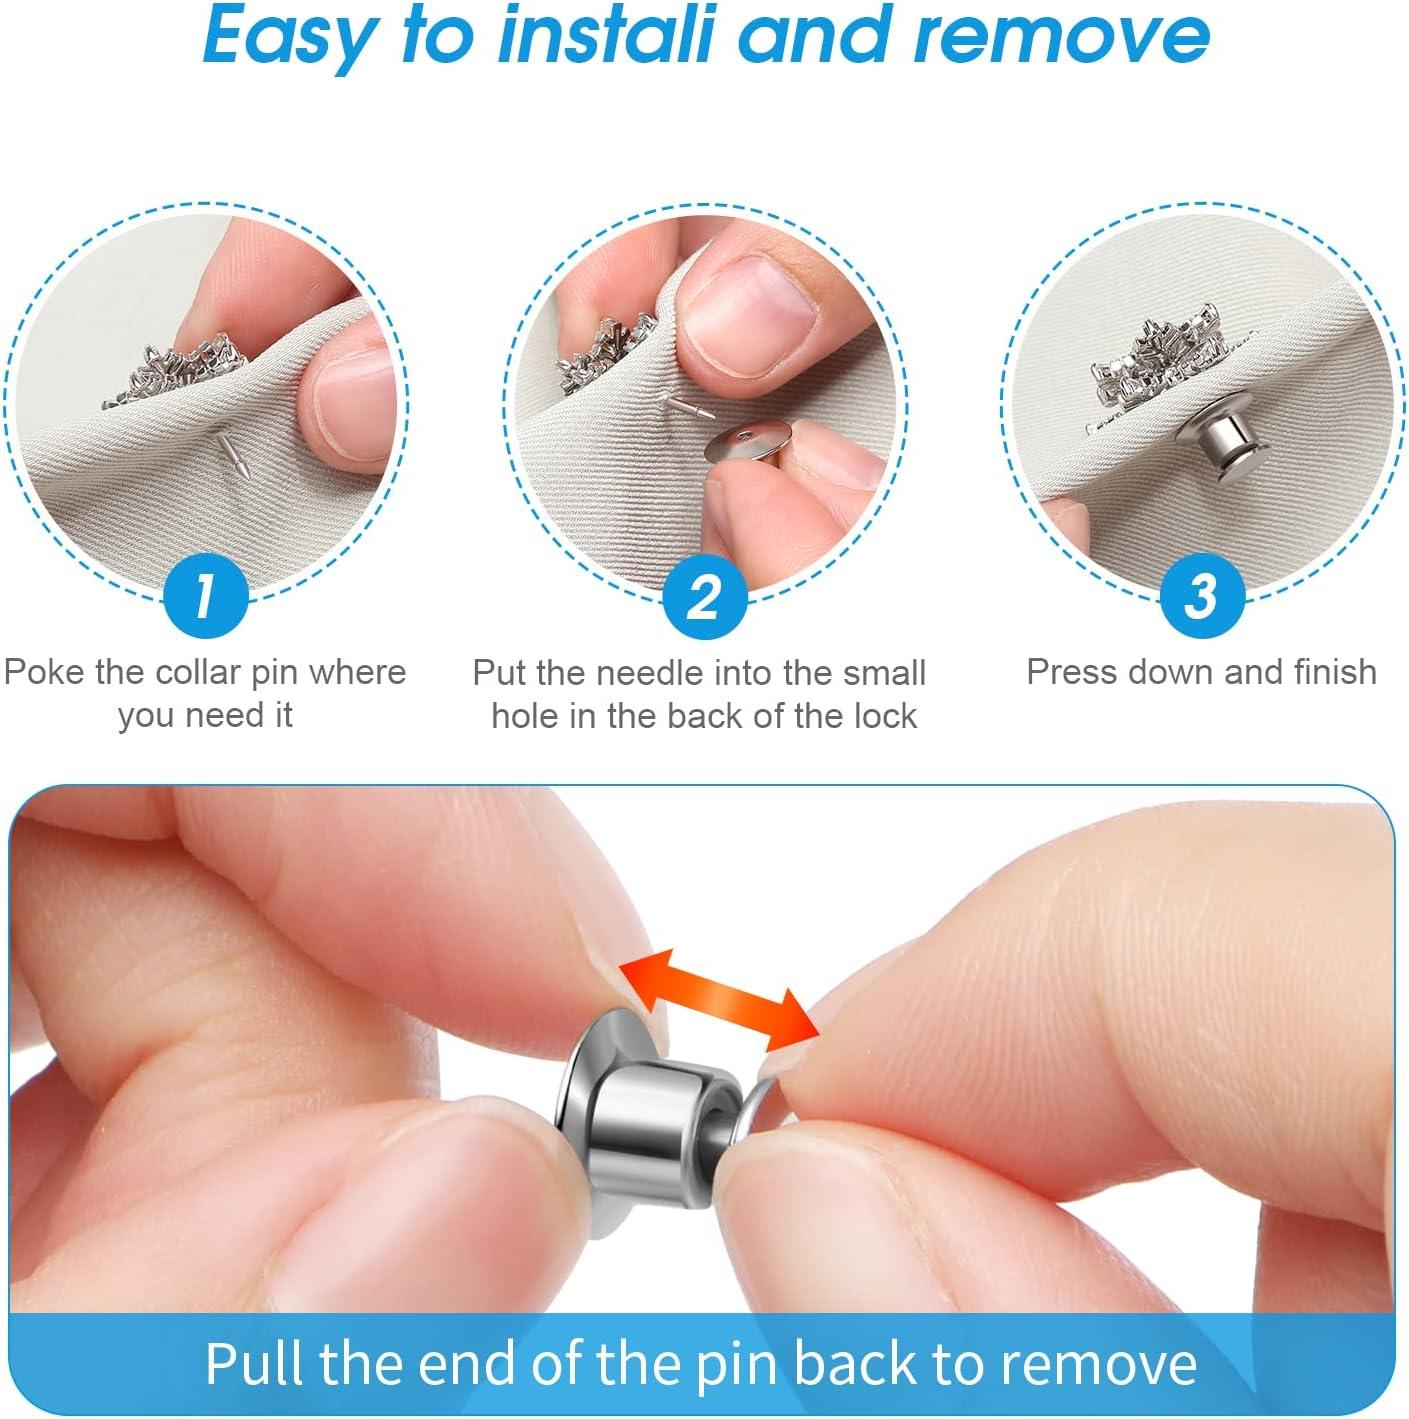 40PCS Locking Pin Back Locking Pin Keeper Clasp Metal Pin Backing